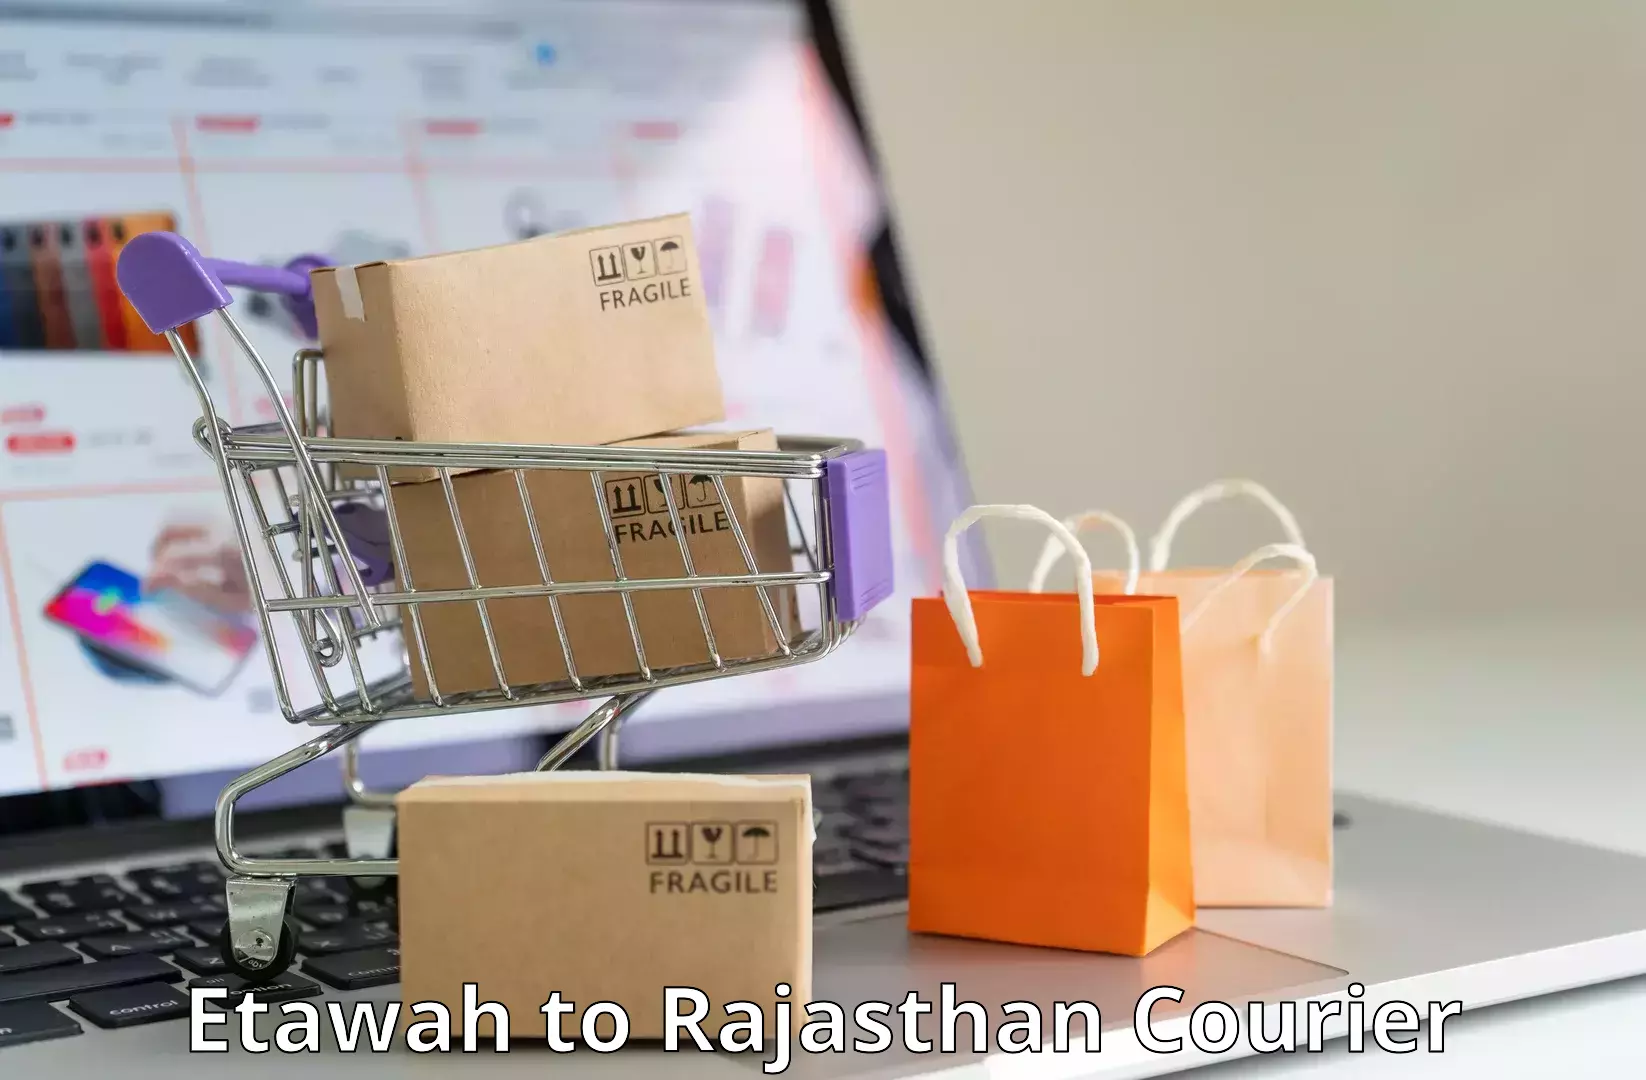 Parcel delivery automation Etawah to Jhunjhunu